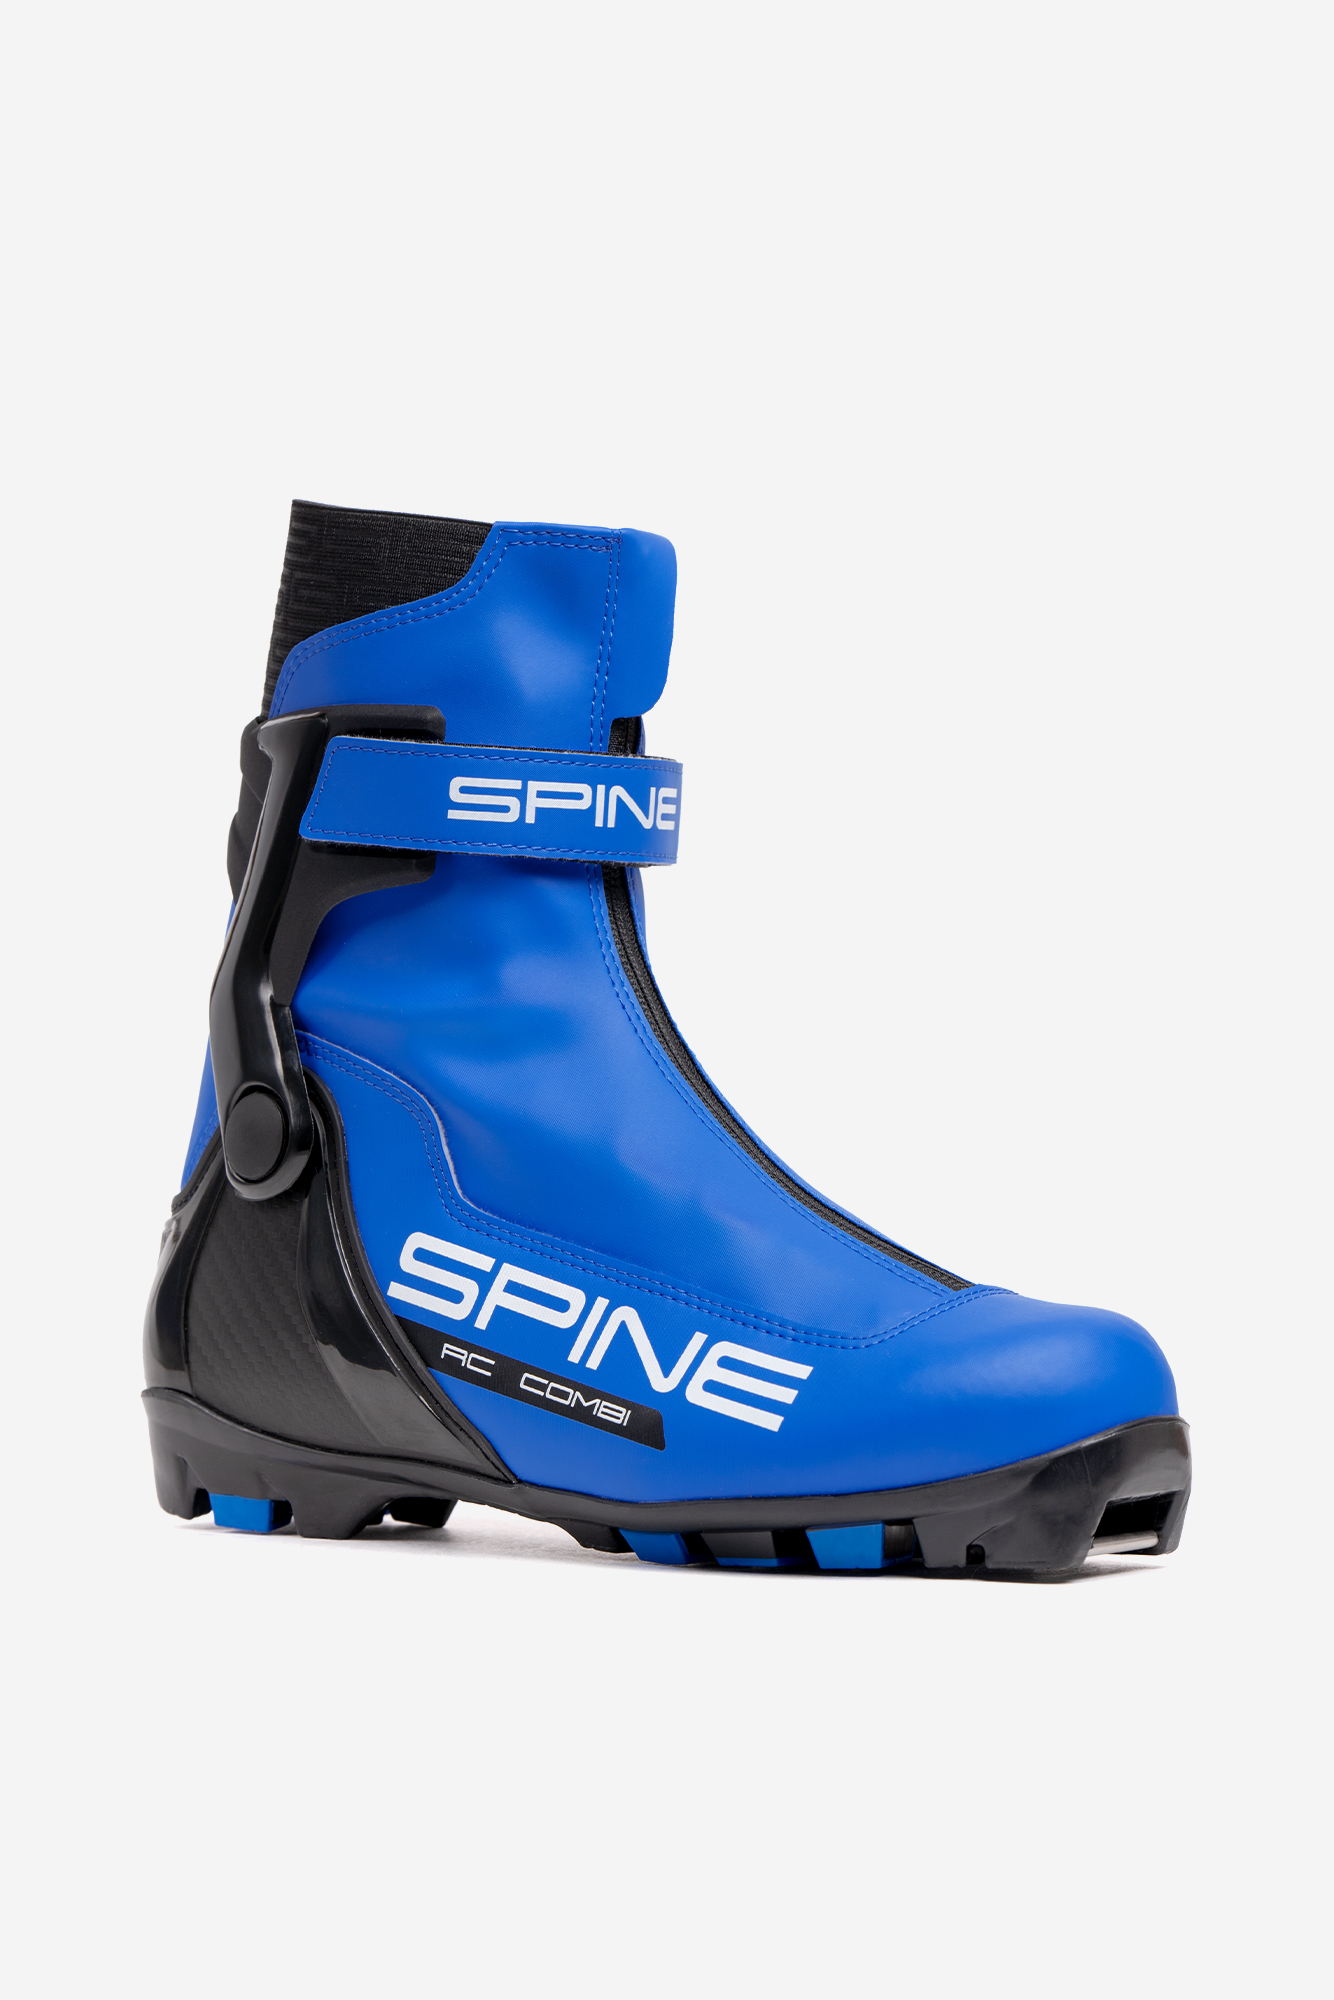 Ботинки для беговых лыж - RC Combi 86/1-22 - Spine